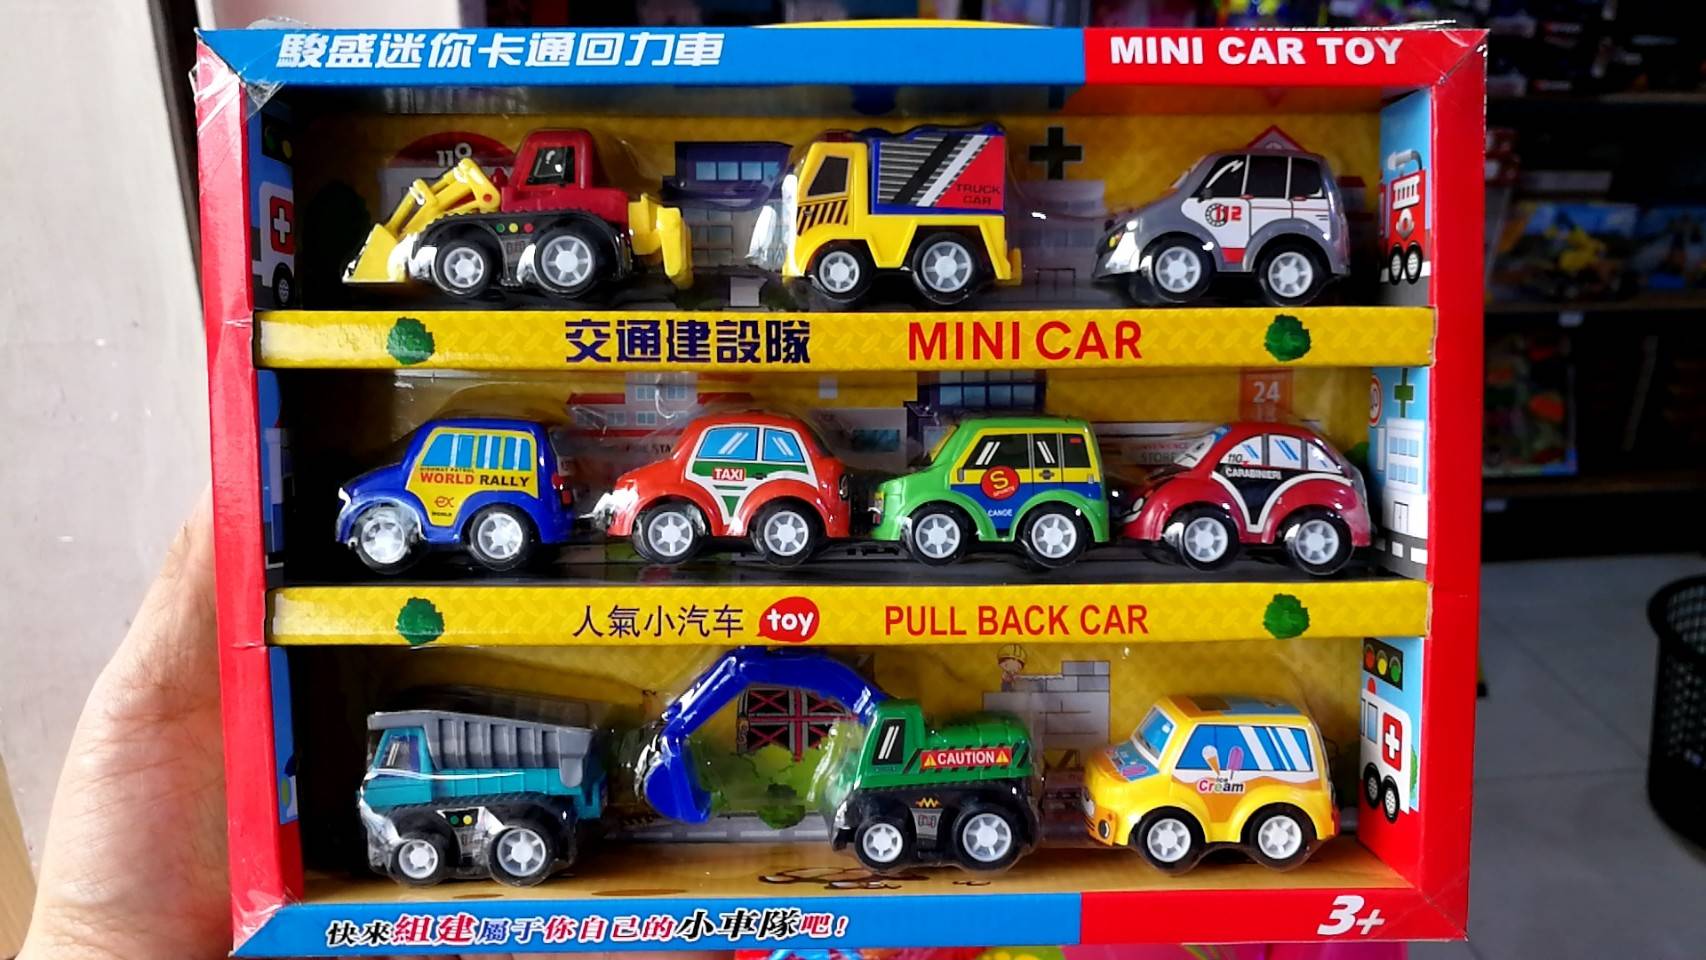 รถของเล่นเด็ก มินิคาร์พลูแบ็ค เซ็ท 10 คัน รถมินิคันเล็ก mini car***สินค้าพร้อมส่ง เก็บเงินปลายทางได้